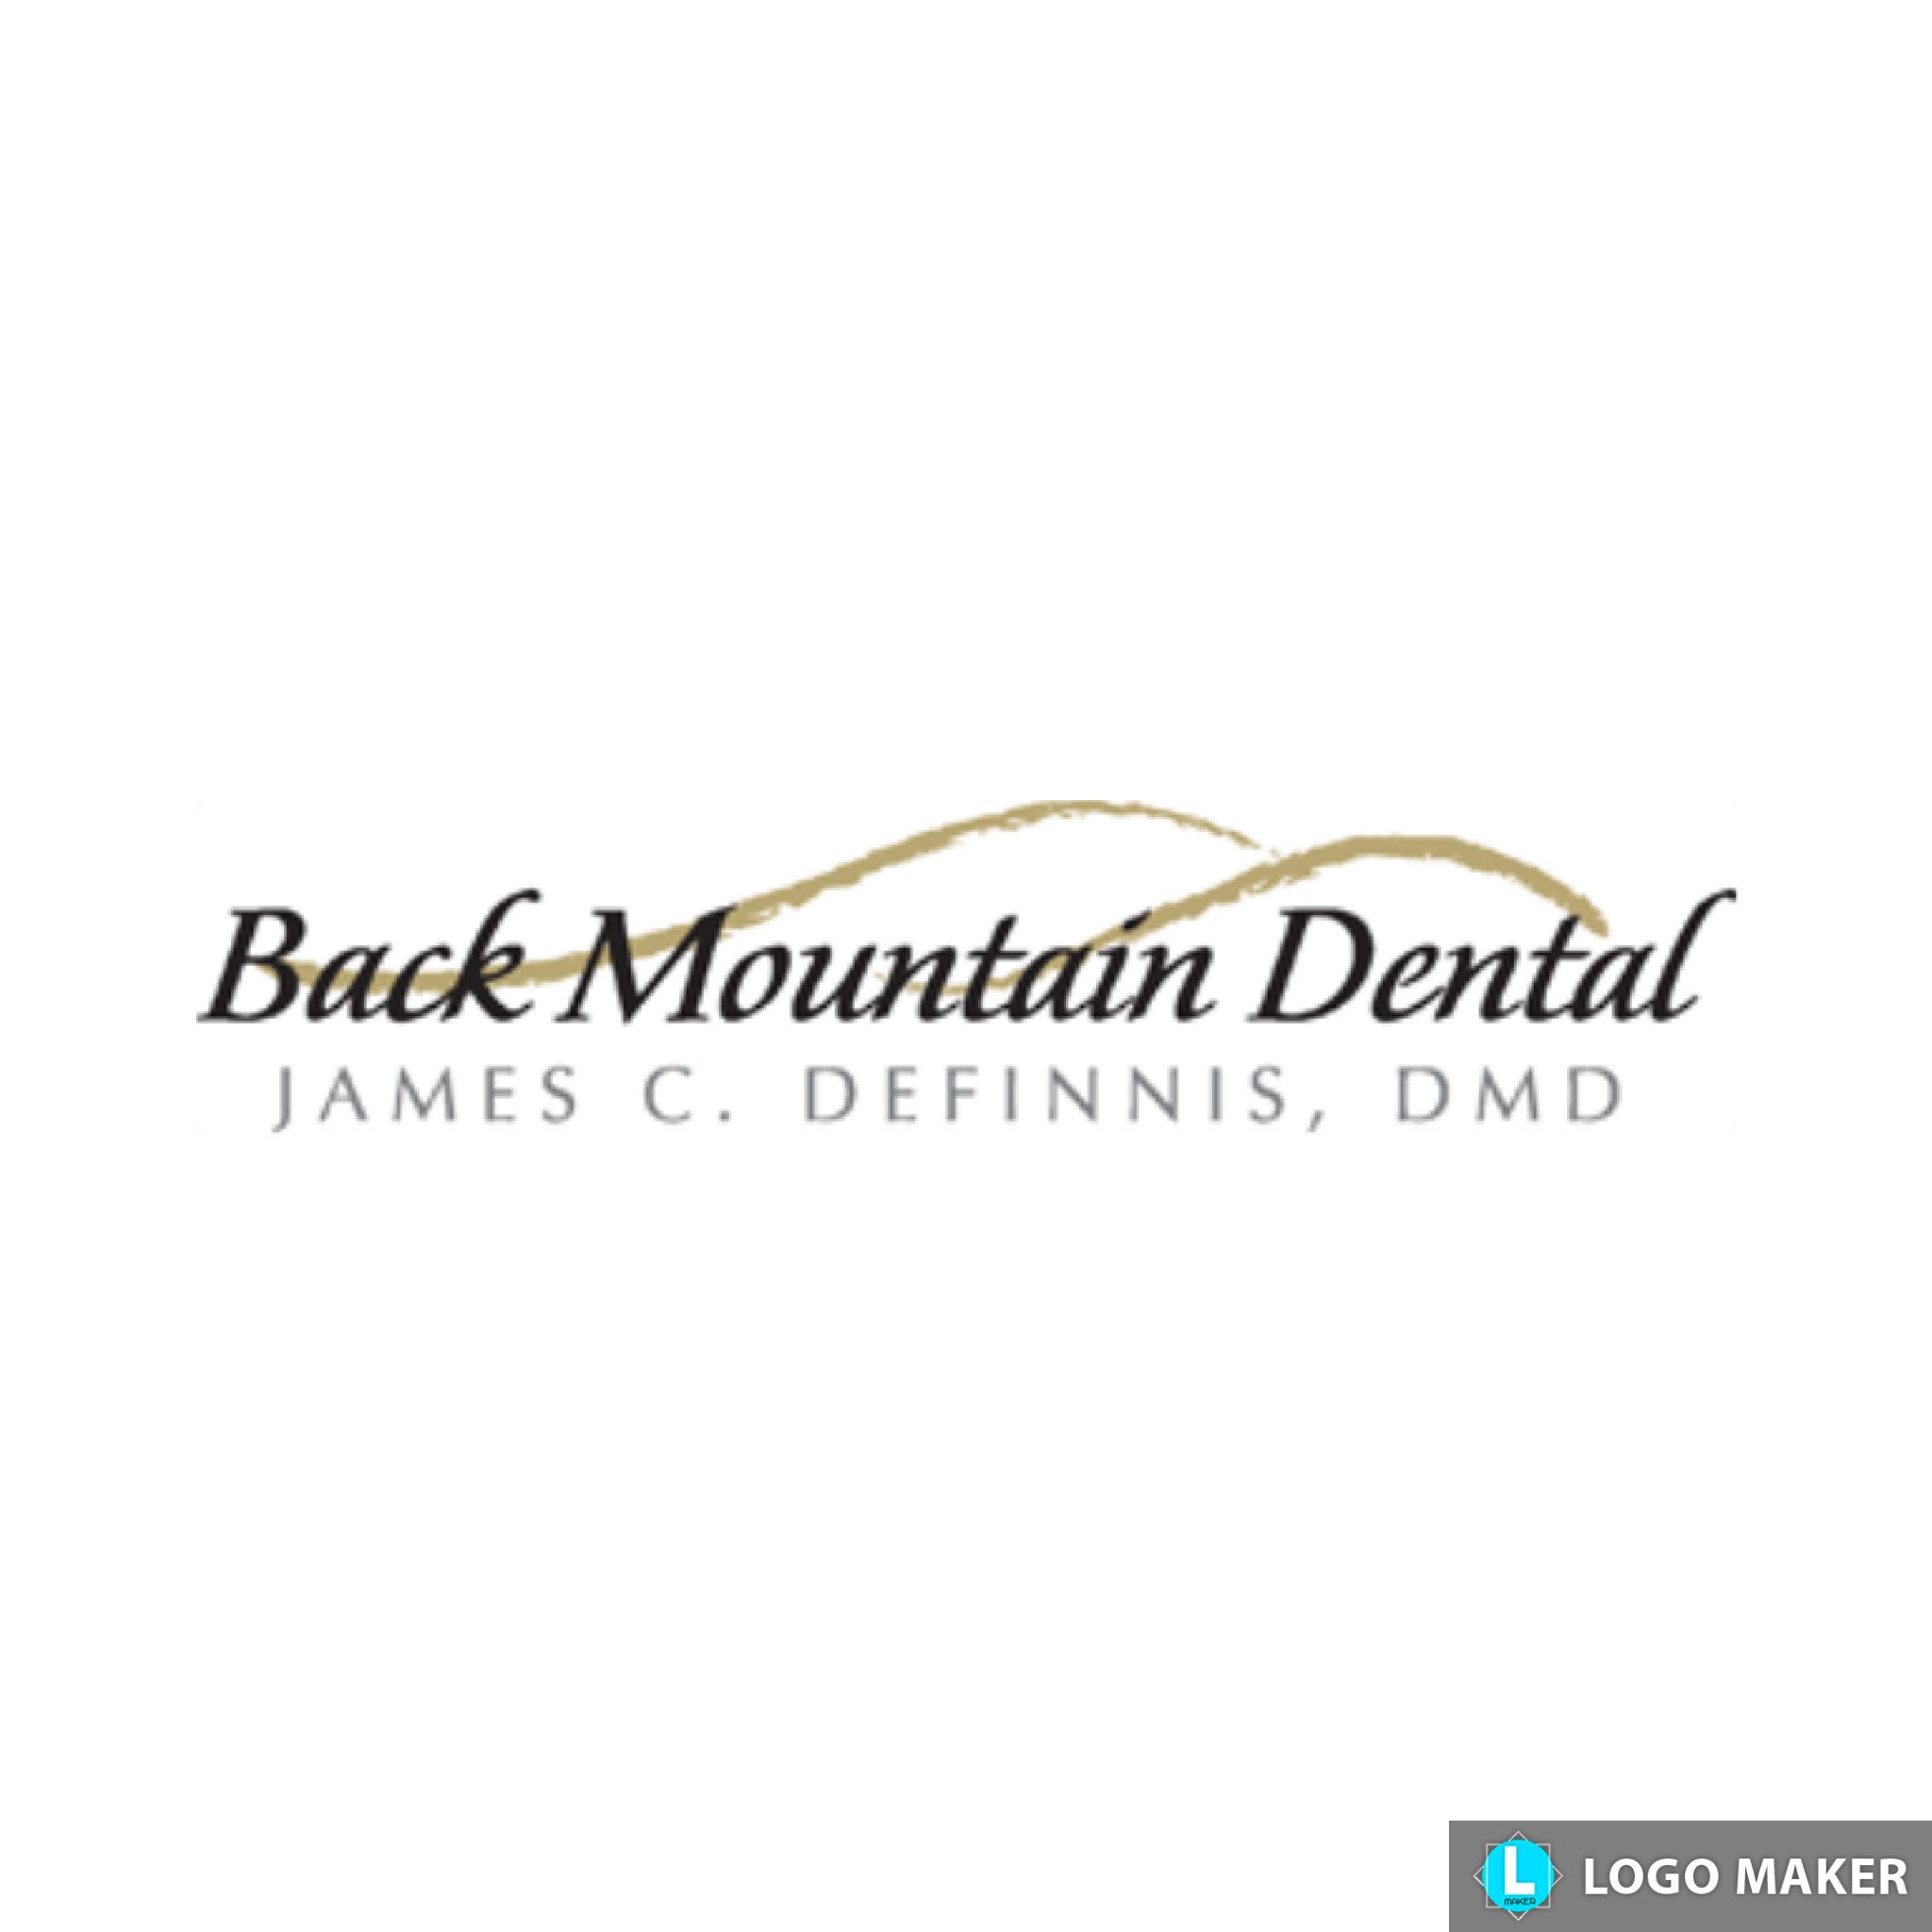 Company logo of Back Mountain Dental